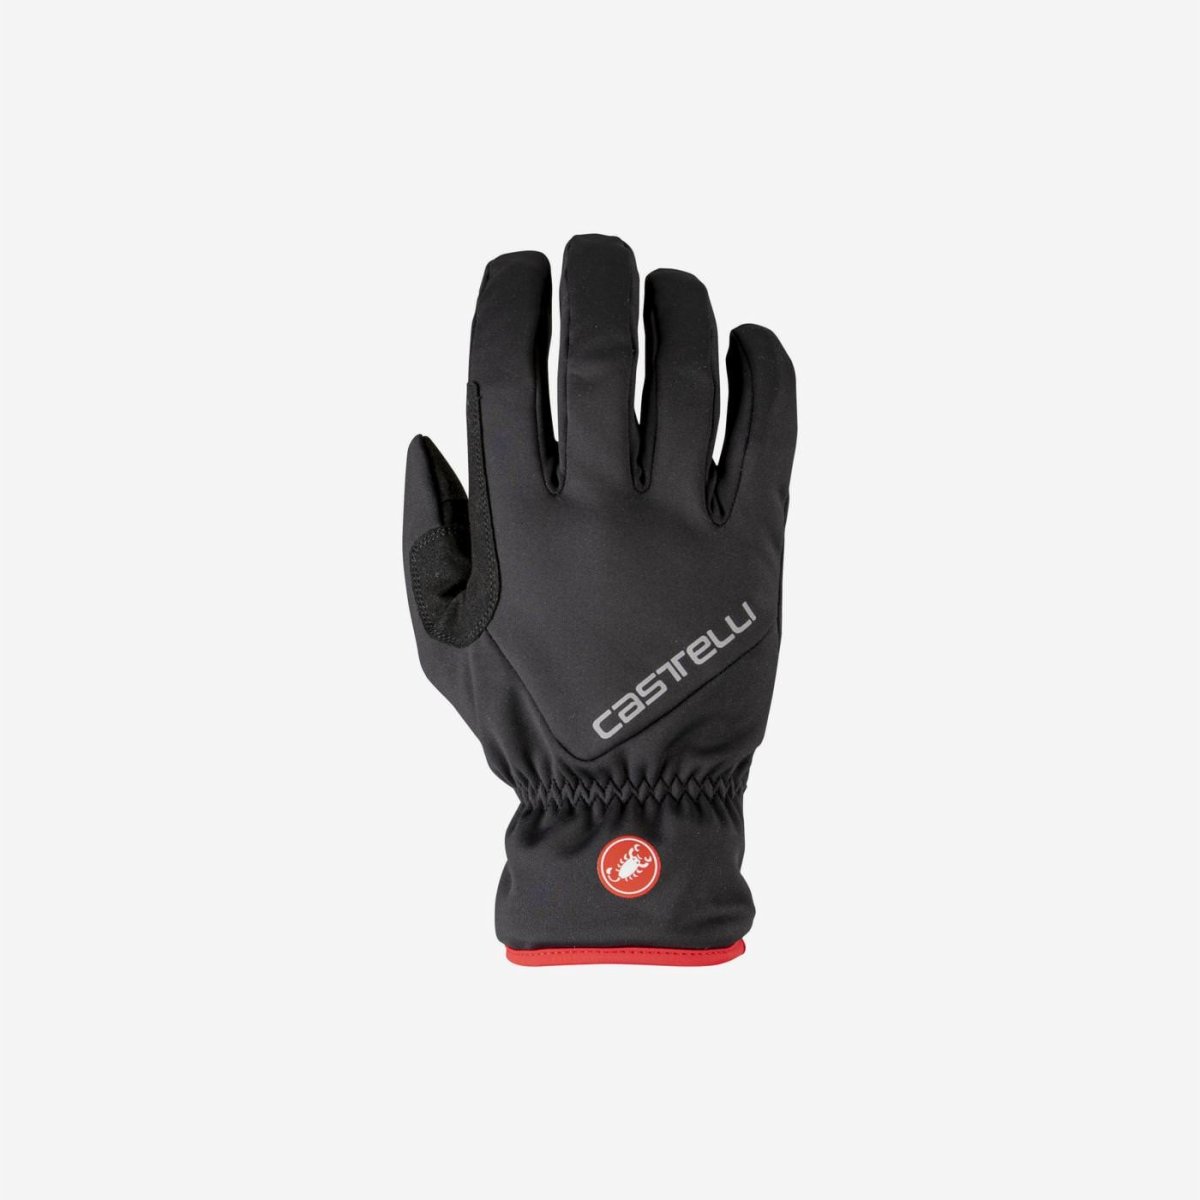 Full Finger Insulated Glove